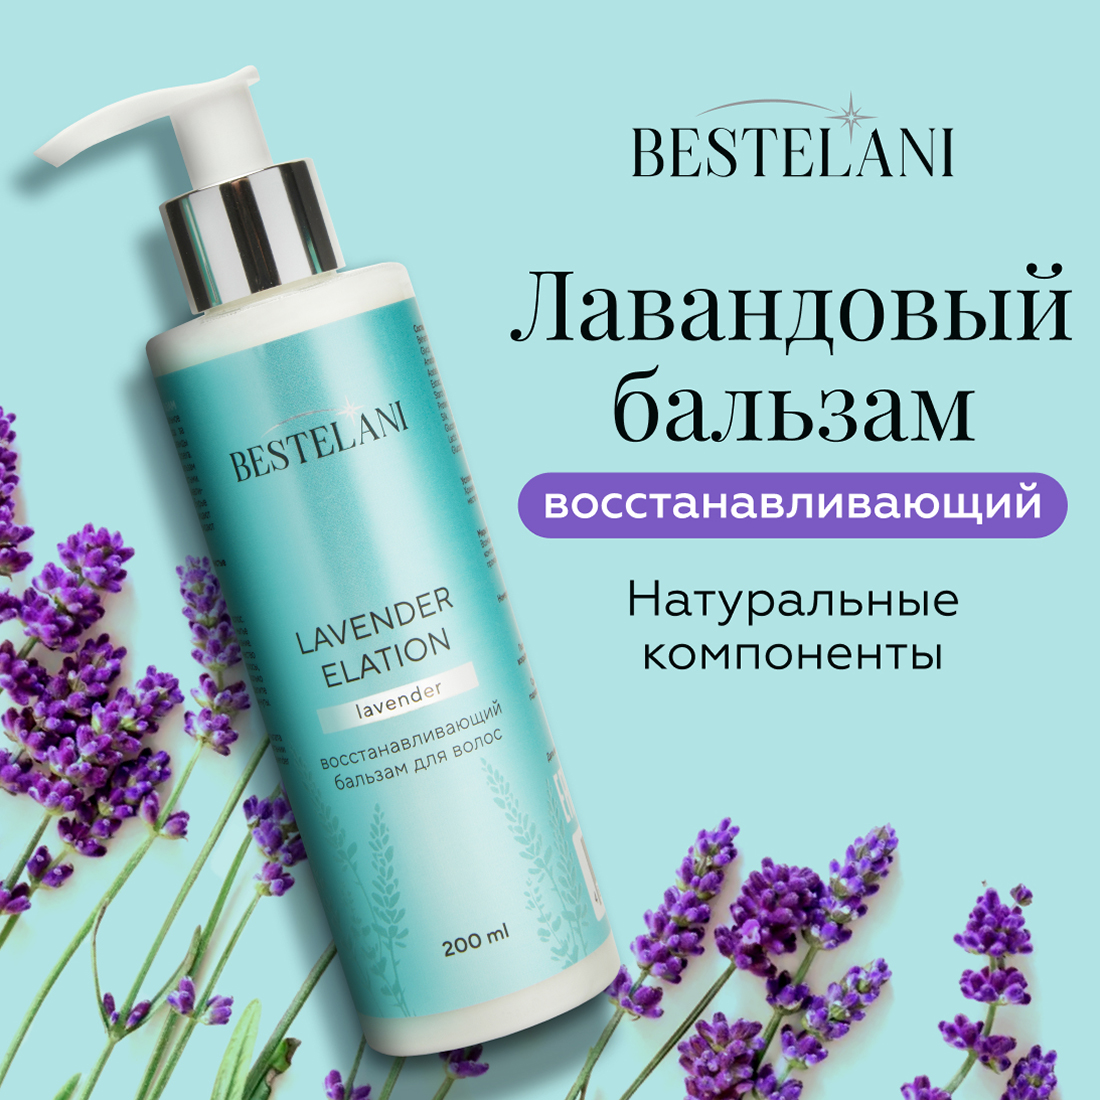 Восстанавливающий бальзам для волос Bestelani Lavender elation 200 мл бальзам для волос kyren moisture nature dear lavender восстанавливающий 500 мл